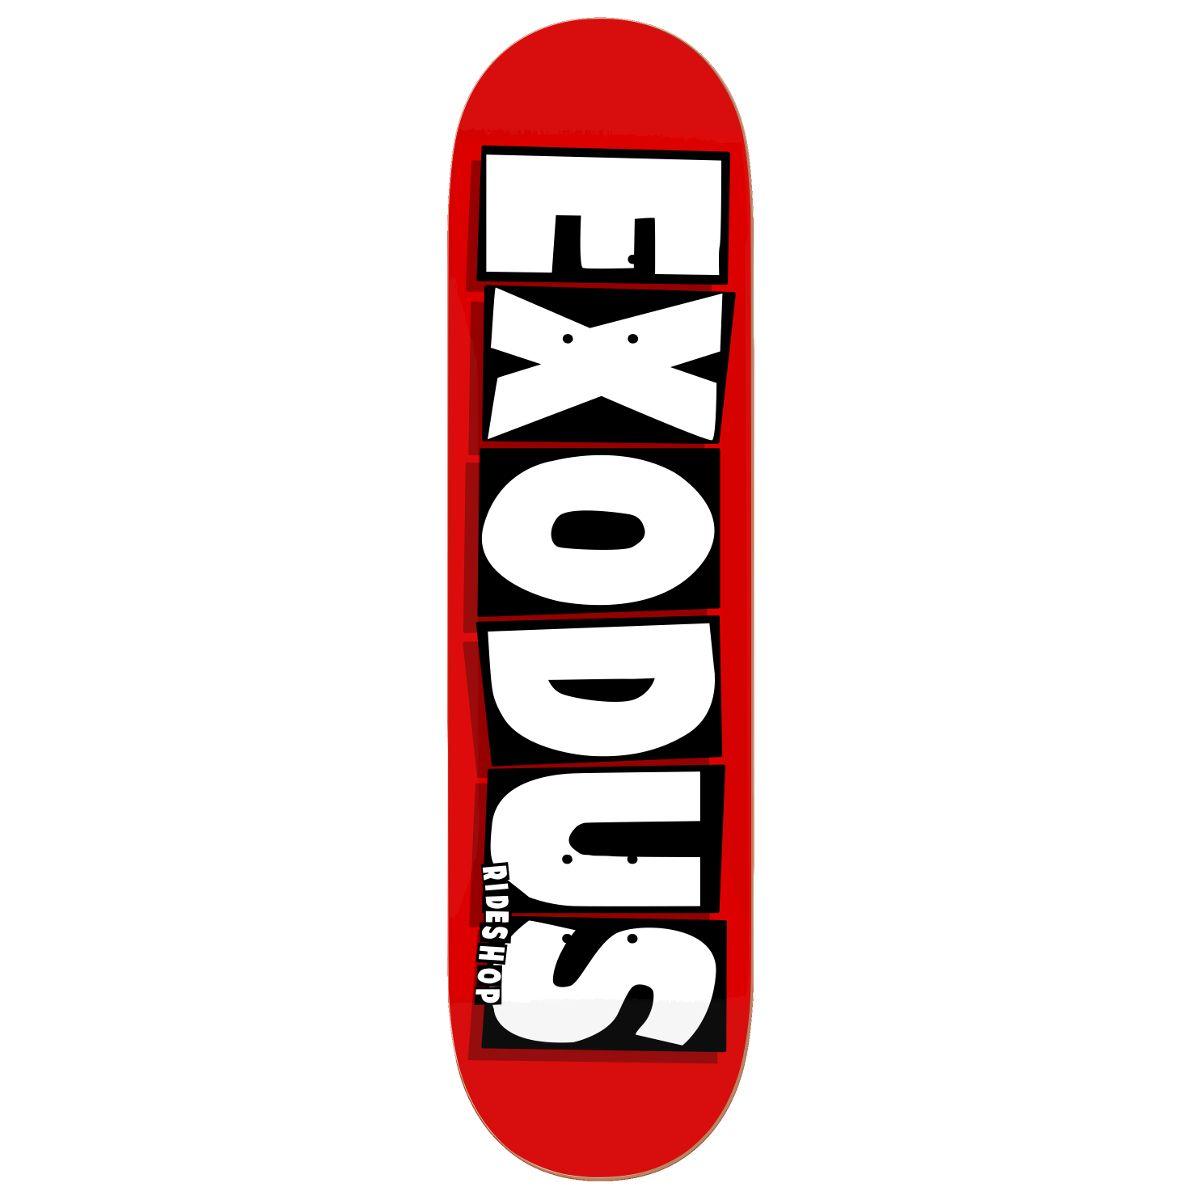 Skateboard Brands Logo - Exodus Brand Logo Full Skateboard Deck White Ride Shop